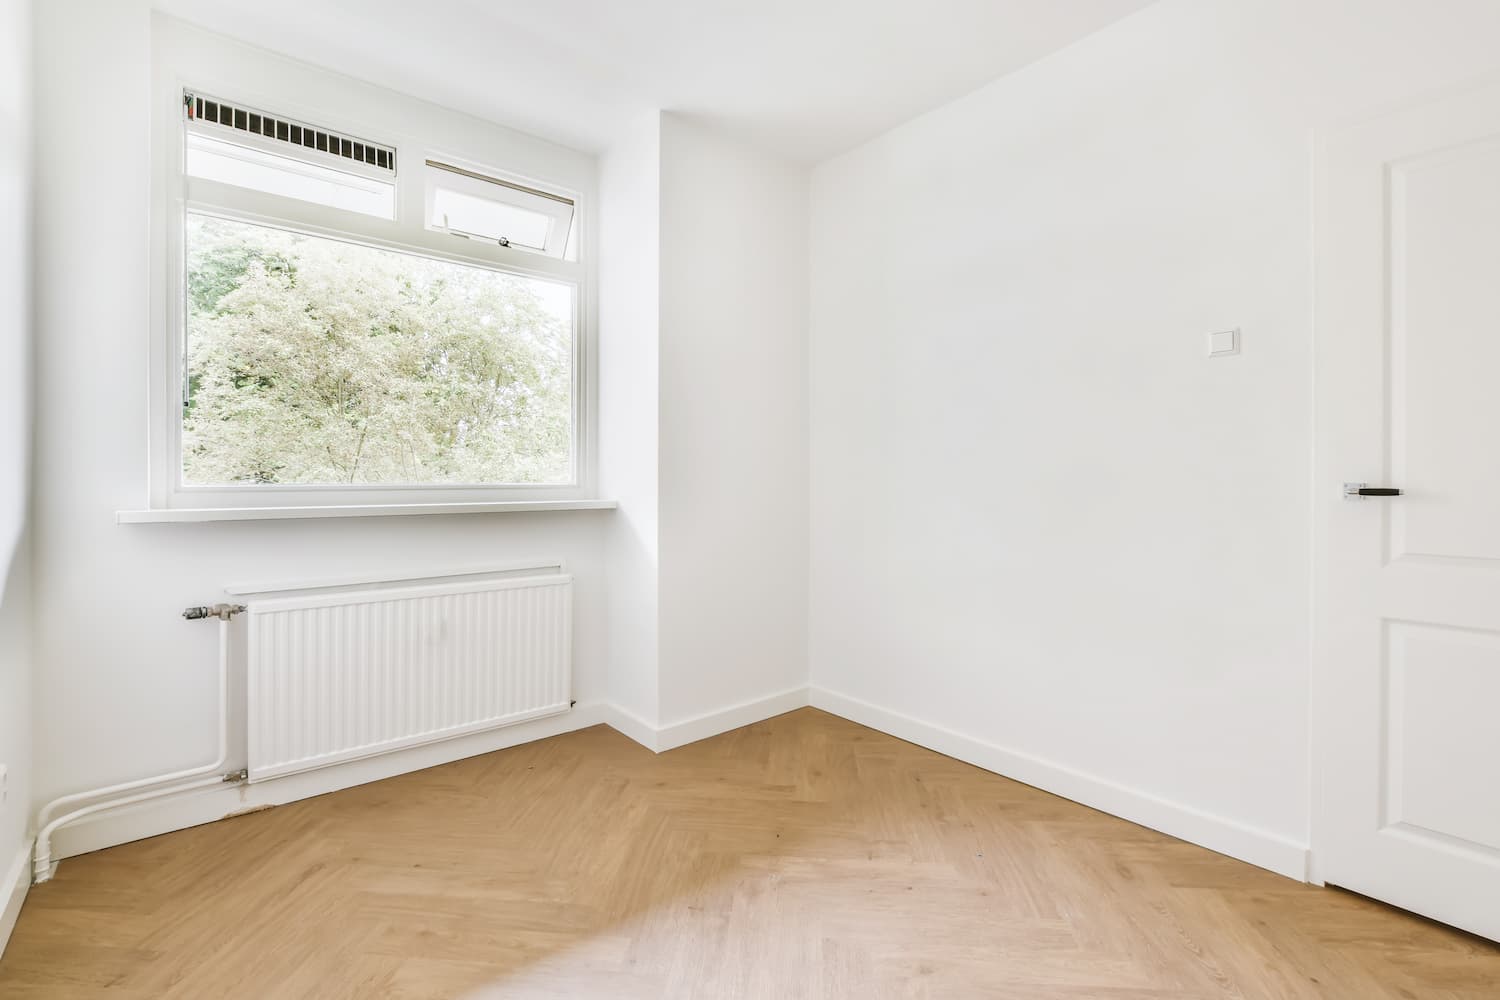 bright-room-with-parquet-flooring-2021-12-09-14-01-59-utc